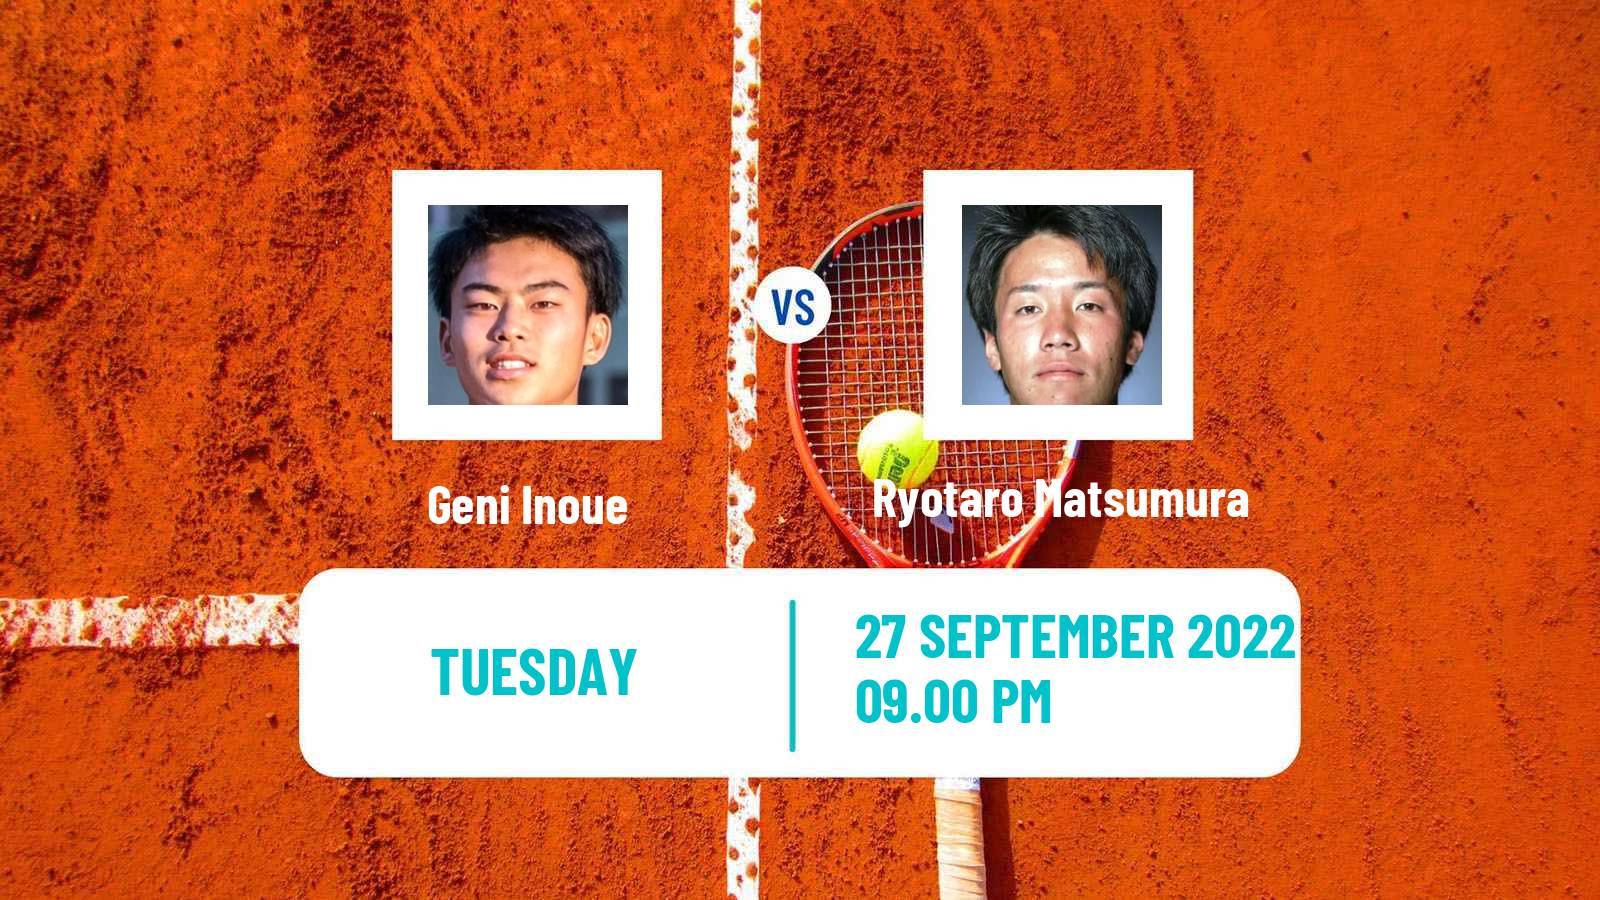 Tennis ITF Tournaments Geni Inoue - Ryotaro Matsumura